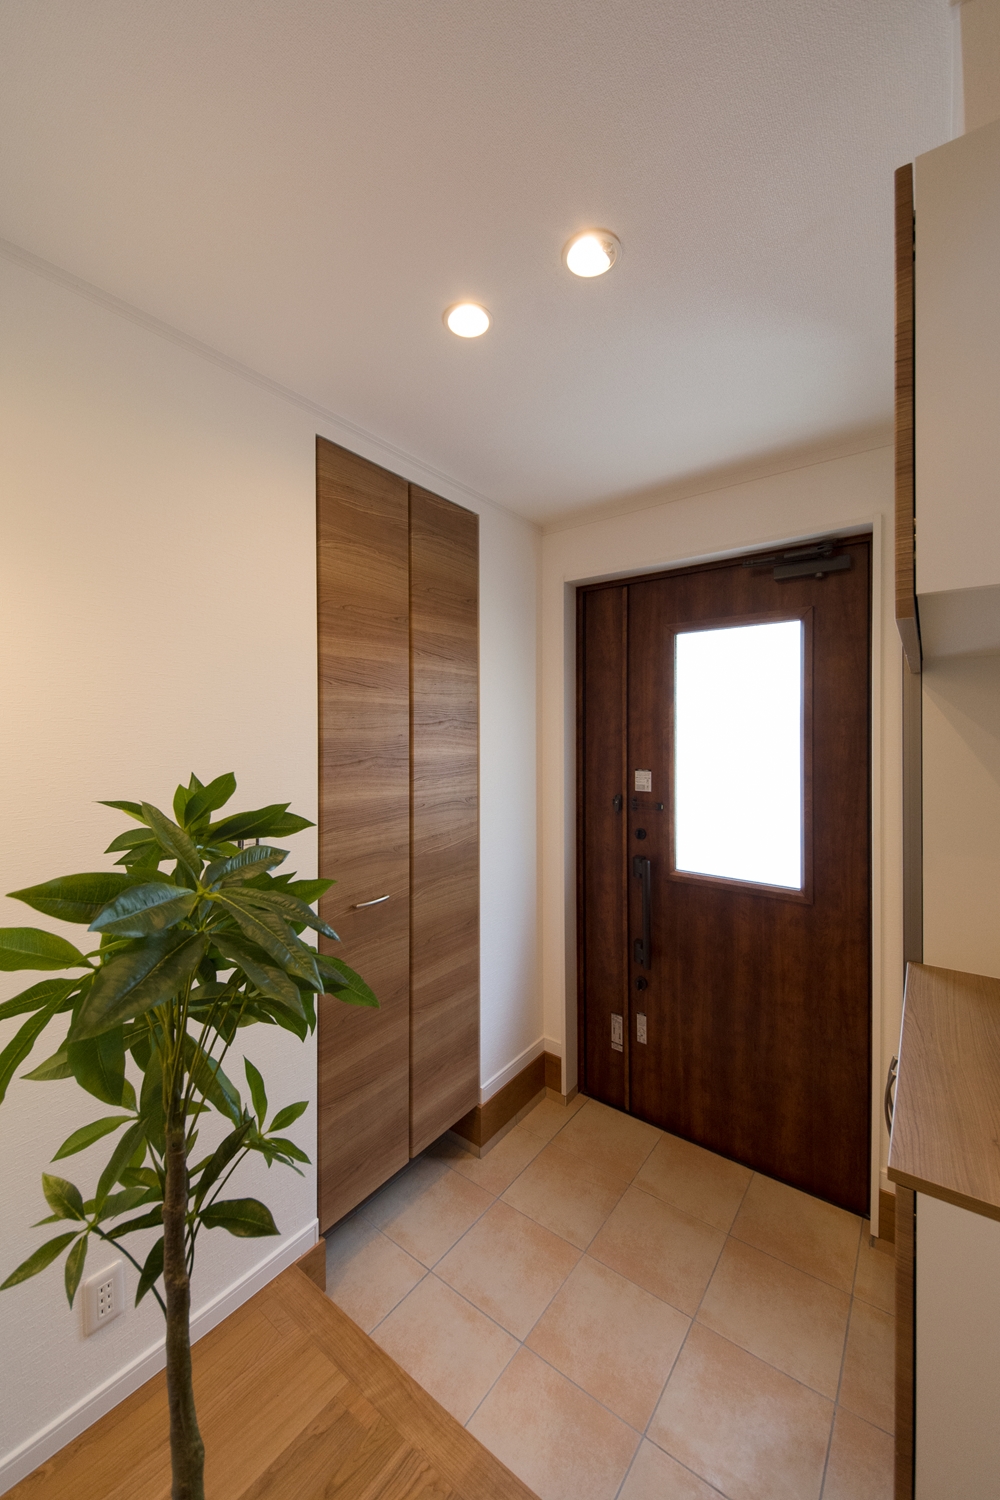 シューズクロークのある便利な玄関。木の温もり感じる暖かみのある空間に。